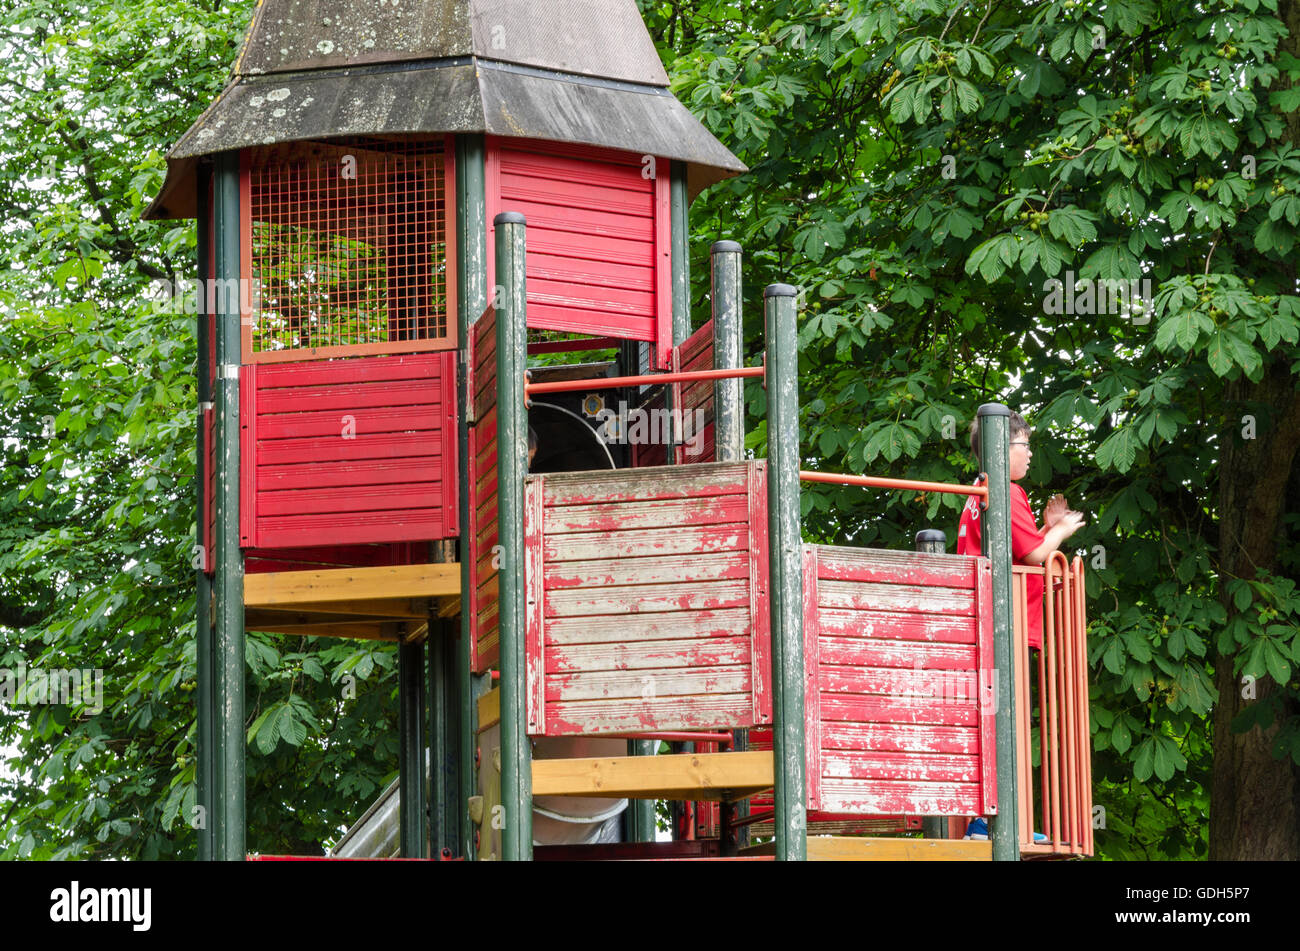 Une escalade dans une aire de jeux pour enfants dans la région de Prospect Park, lecture. Banque D'Images